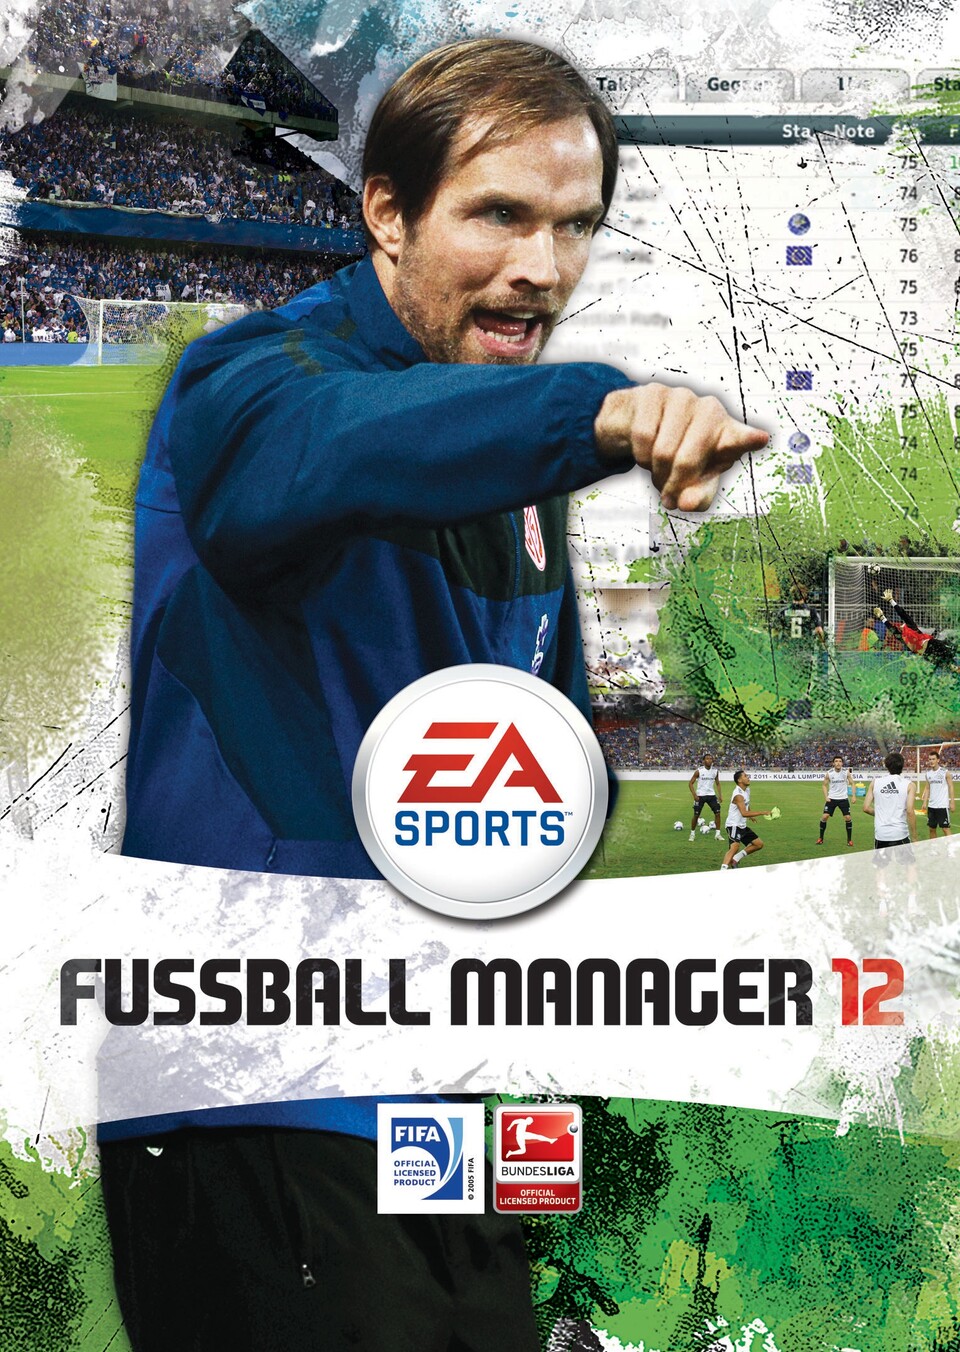 Thomas Tuchel vom 1. FSV Mainz 05 ist der Cover-Star von Fussball Manager 12.